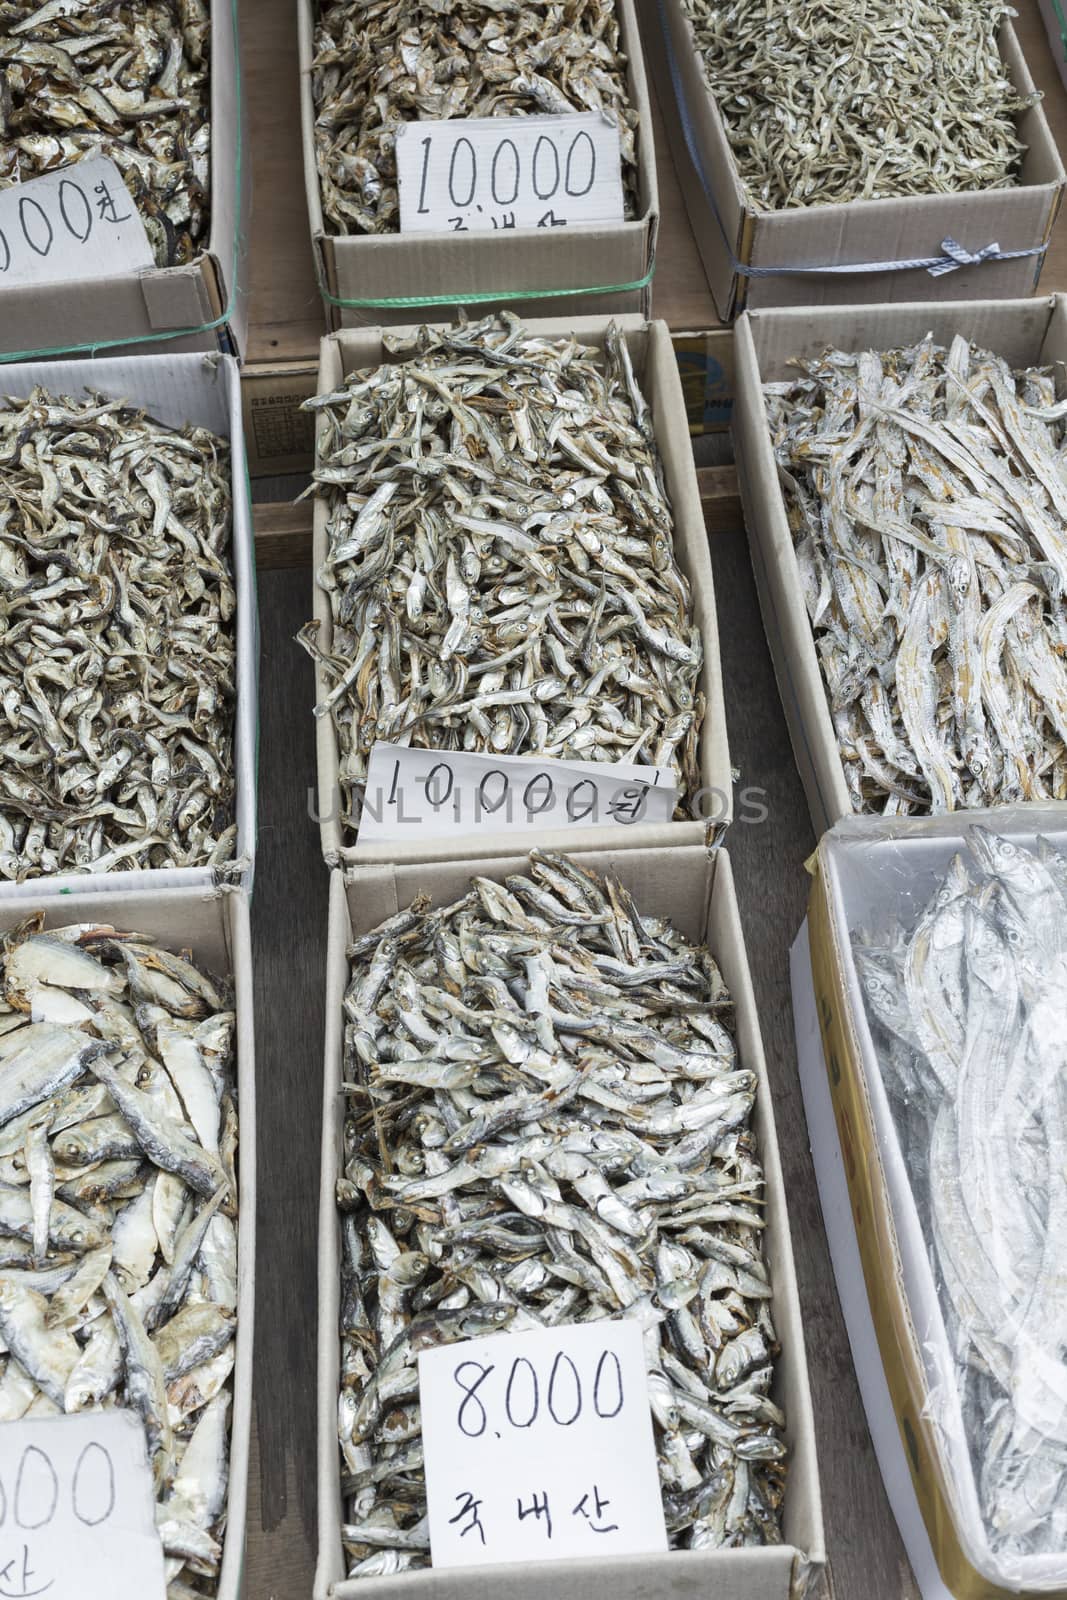 Dried fish market in South Korea by mariusz_prusaczyk